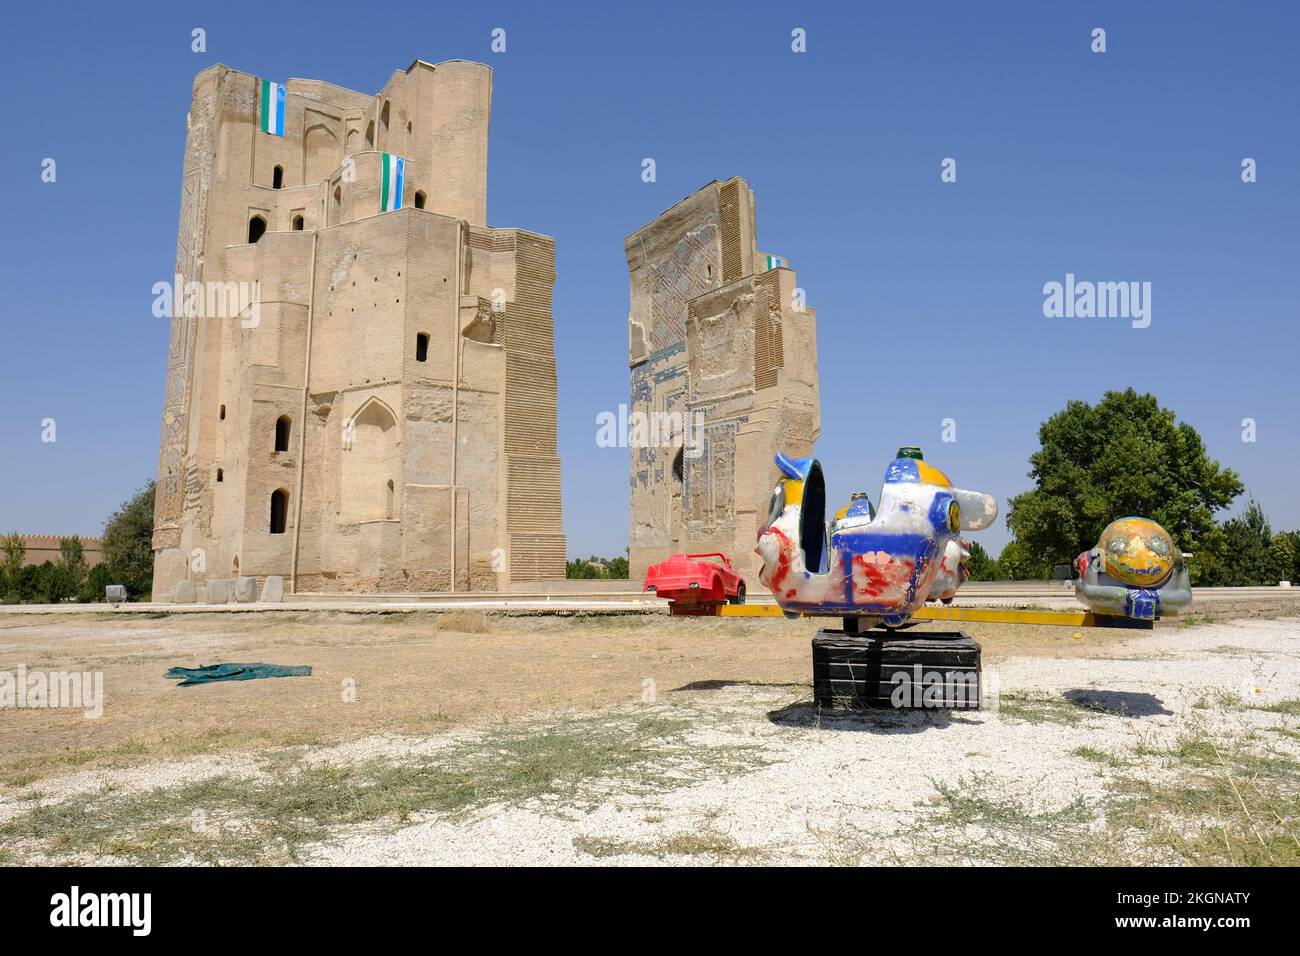 Shakhrisabz Uzbekistan - rovine dell'enorme arco d'ingresso del palazzo di AK Serai ( Palce Bianca ) costruito da Amir Temur con parco giochi per bambini Foto Stock